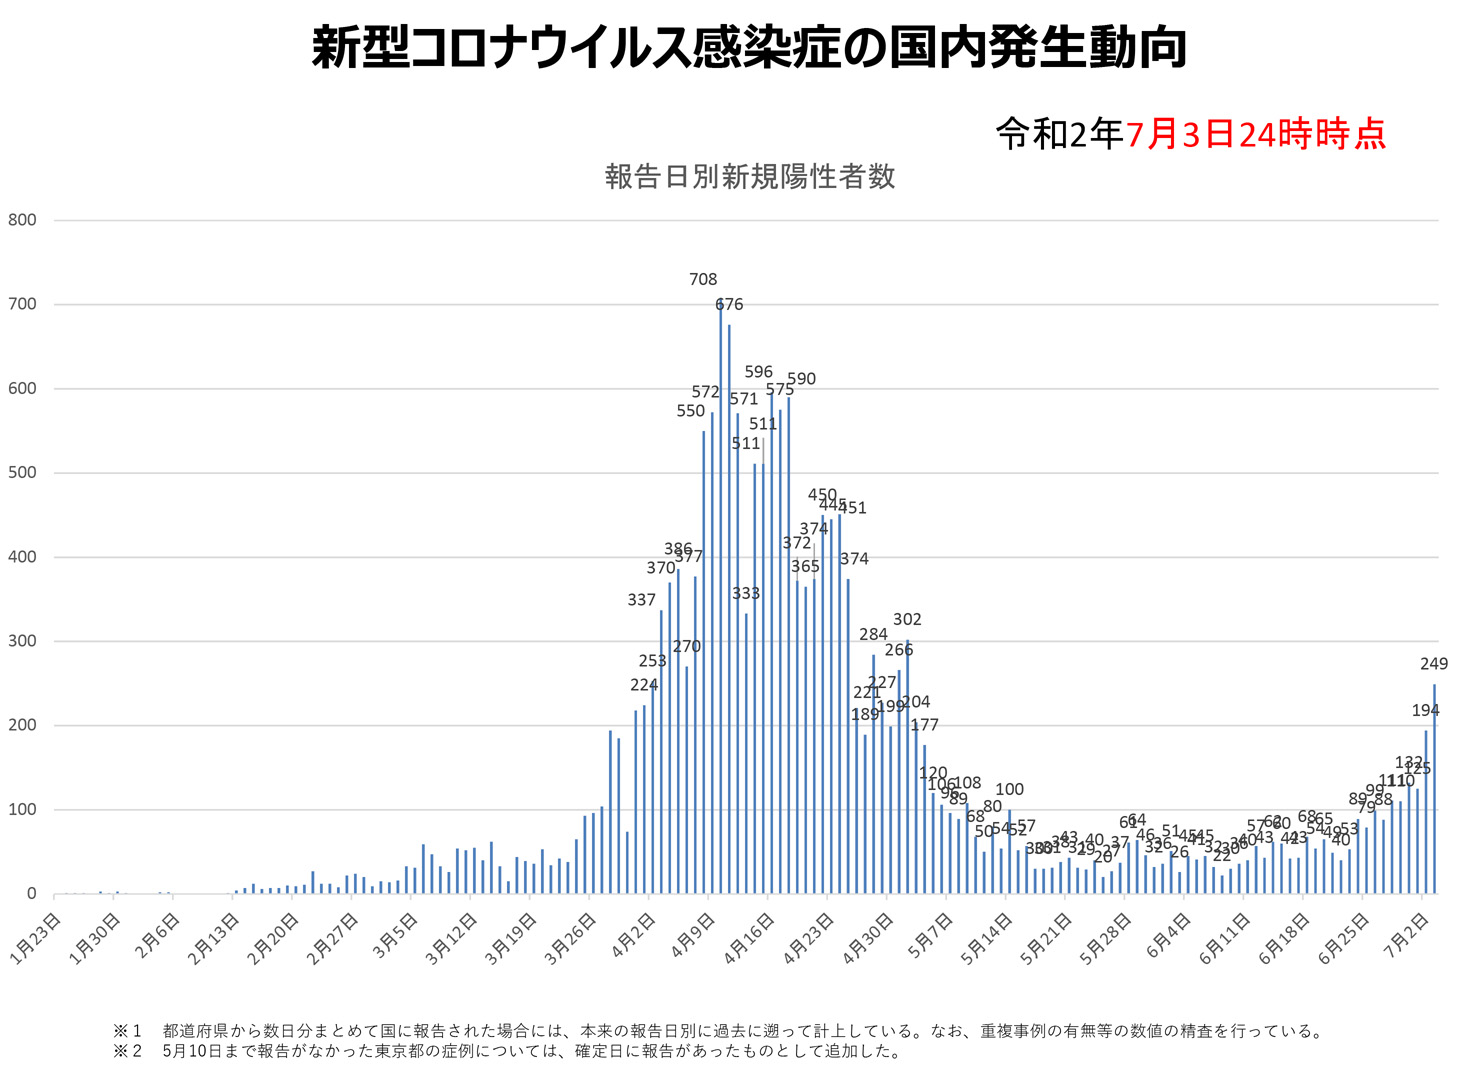 Die Kurve zeigt nach oben: Die tägliche Entwicklung in Japan bis zum 3. Juli 2020.